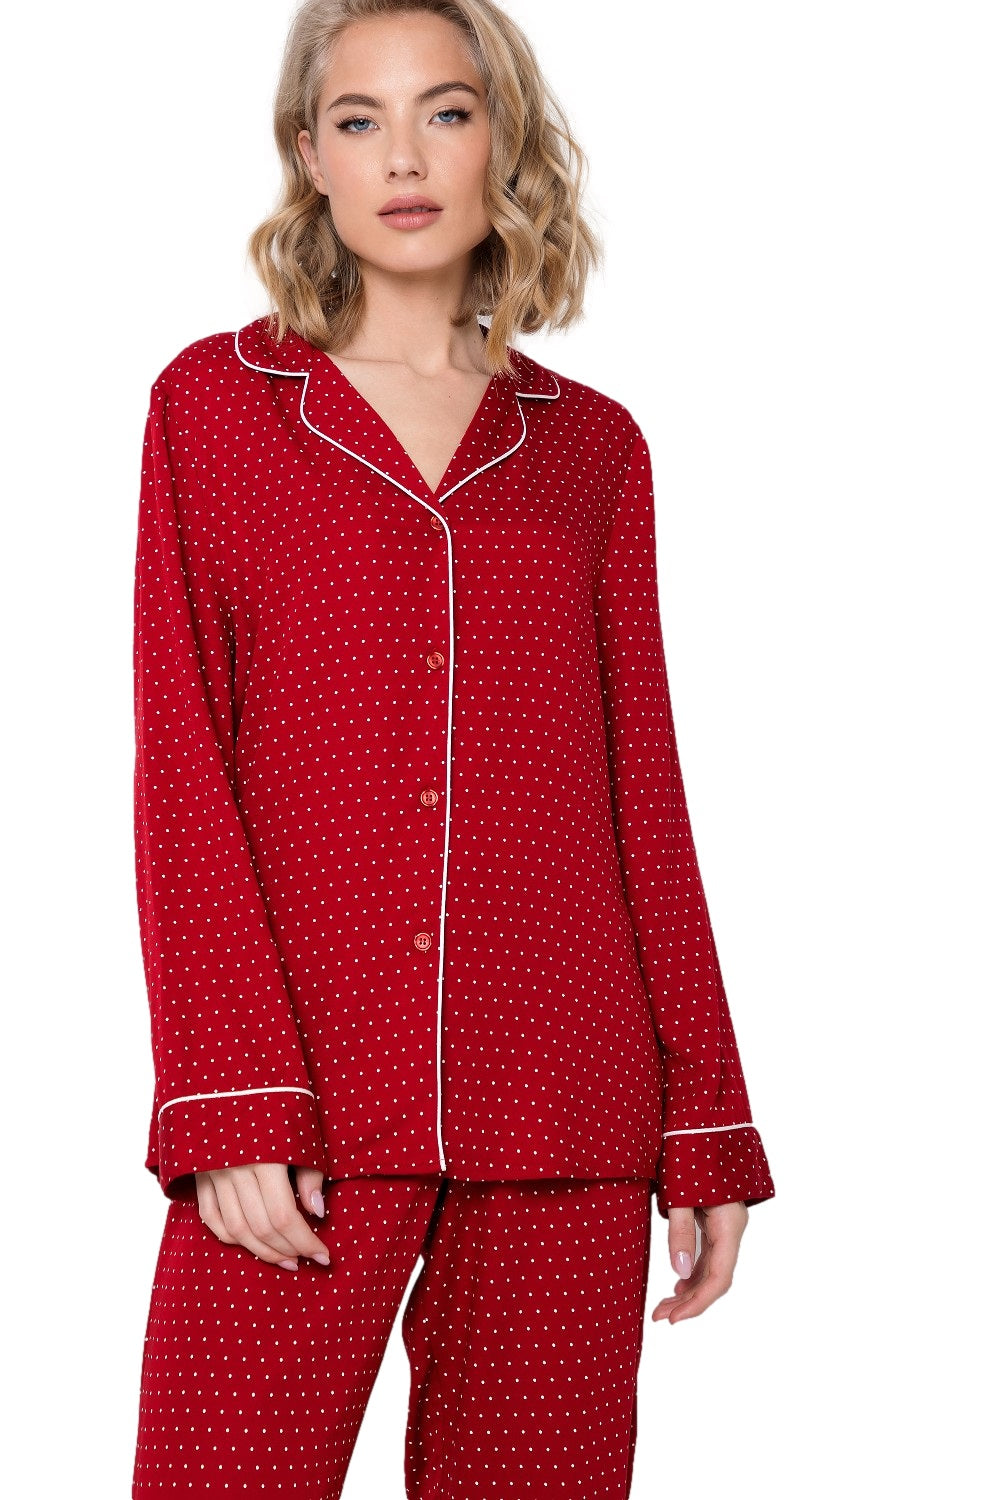 Viskose Damenpyjama Michaela in weihnachtlichen Farben - Rot und Weiss